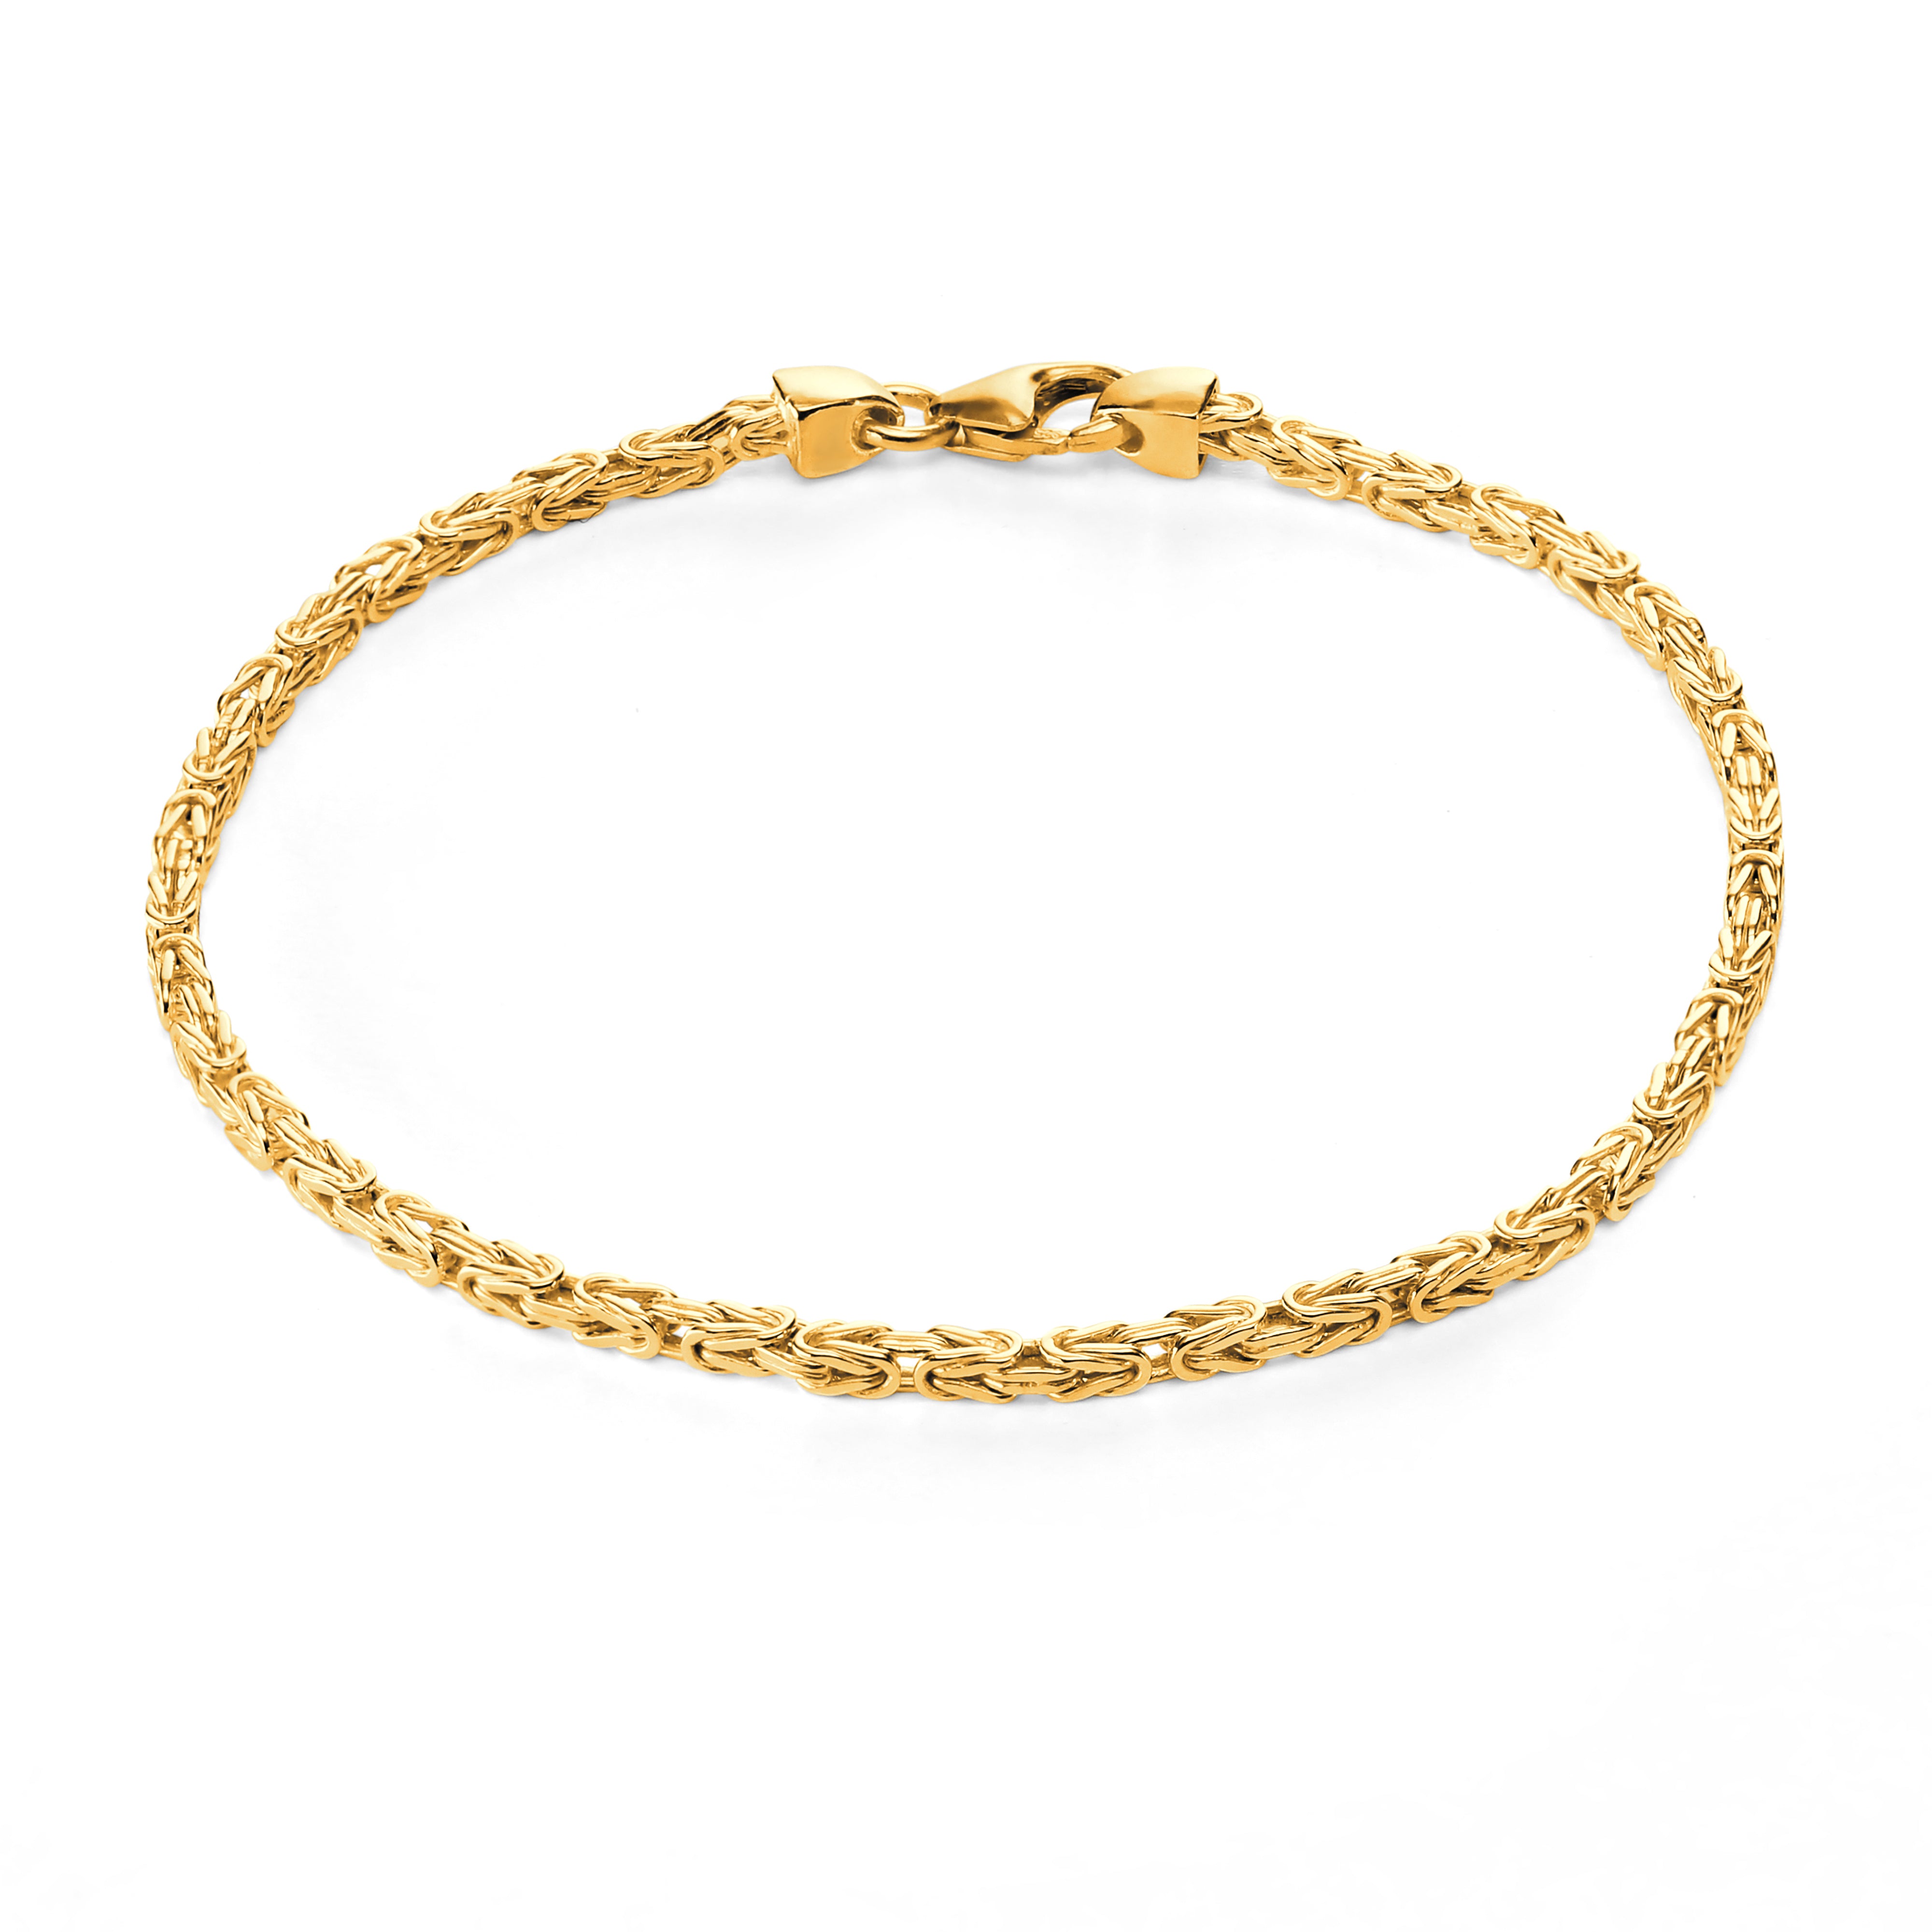 Byzantine bracelet 2mm wide - 585 gold